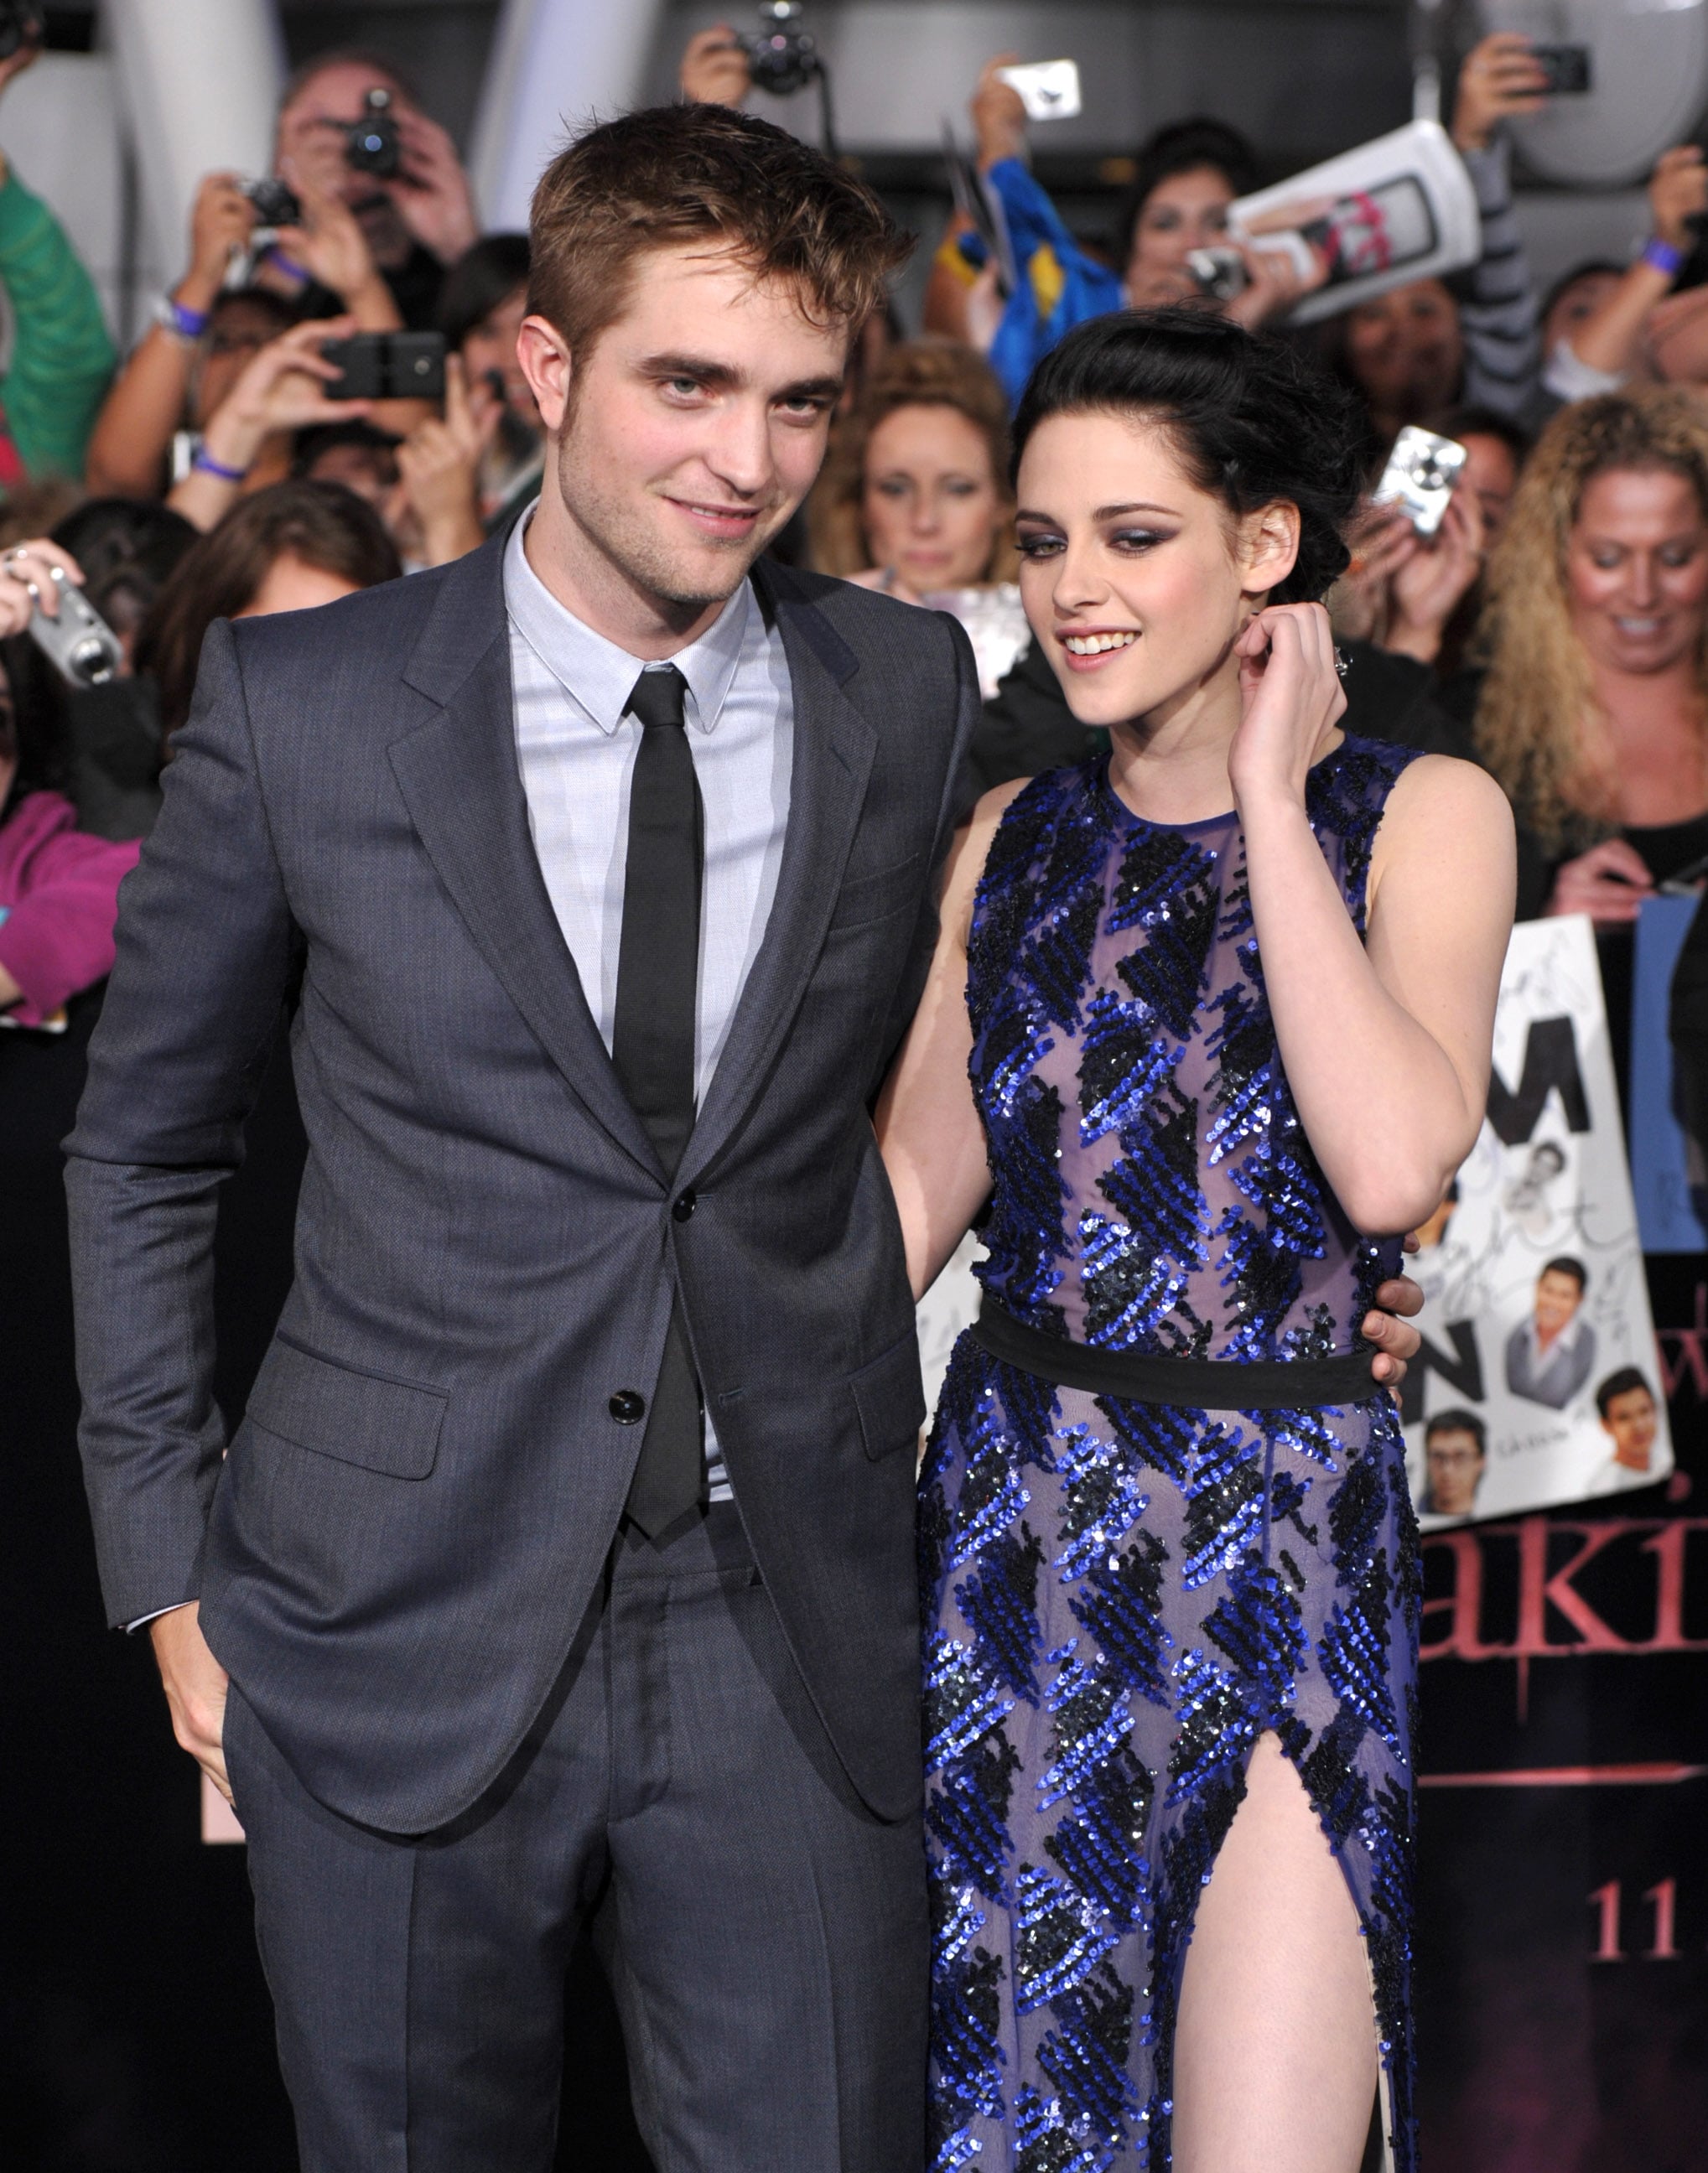 Robert Pattinson dated Kristen Stewart from 2009 till 2013